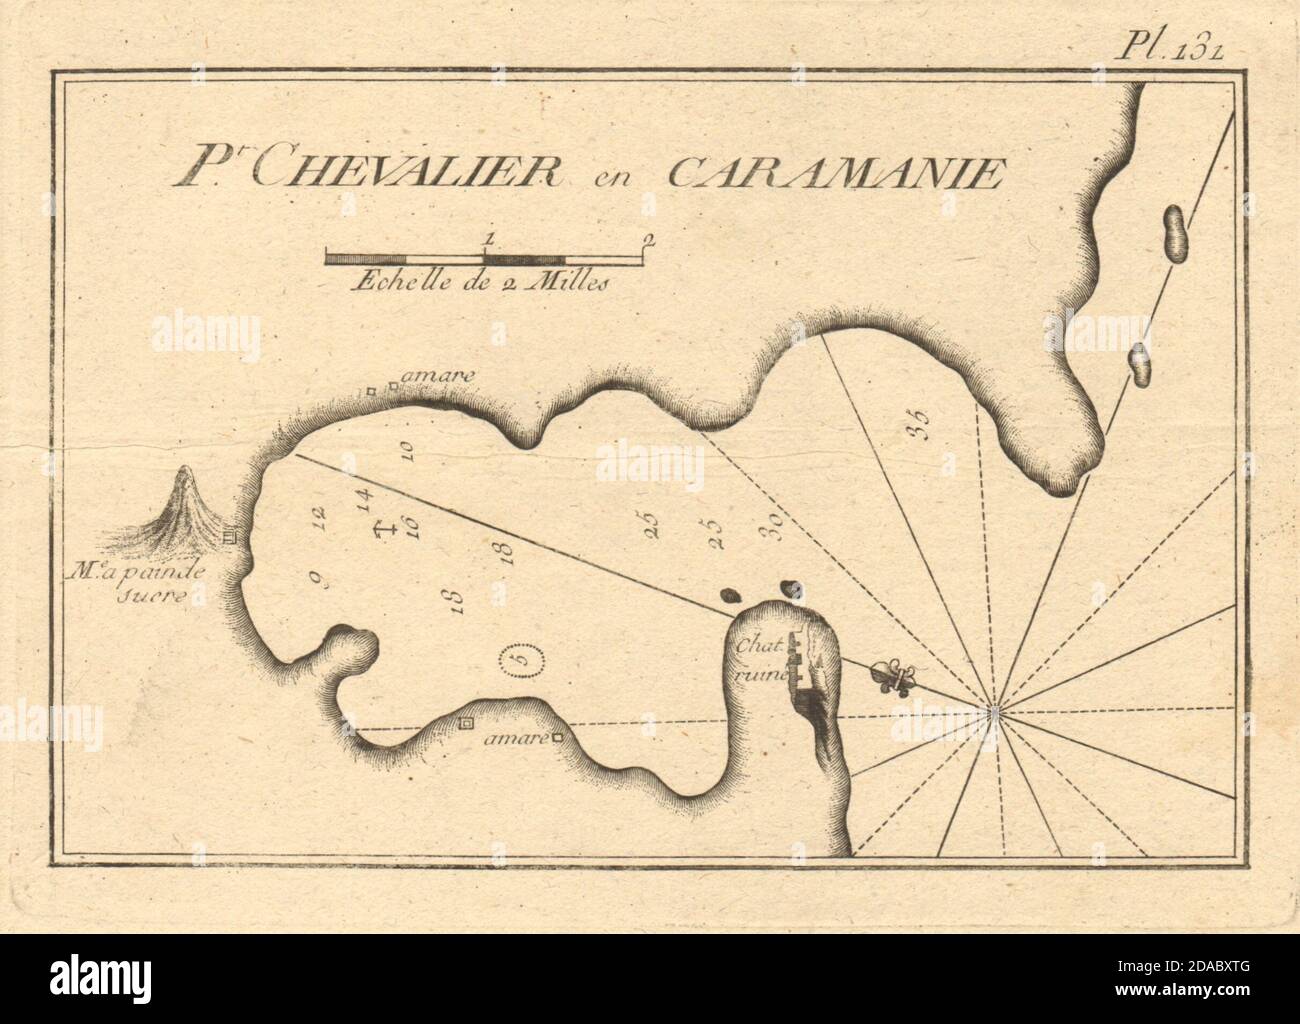 Pt. Chevalier, Caramanie. Bucht von Ekincik, Provinz Mugla, Türkei. ROUX 1804 Karte Stockfoto